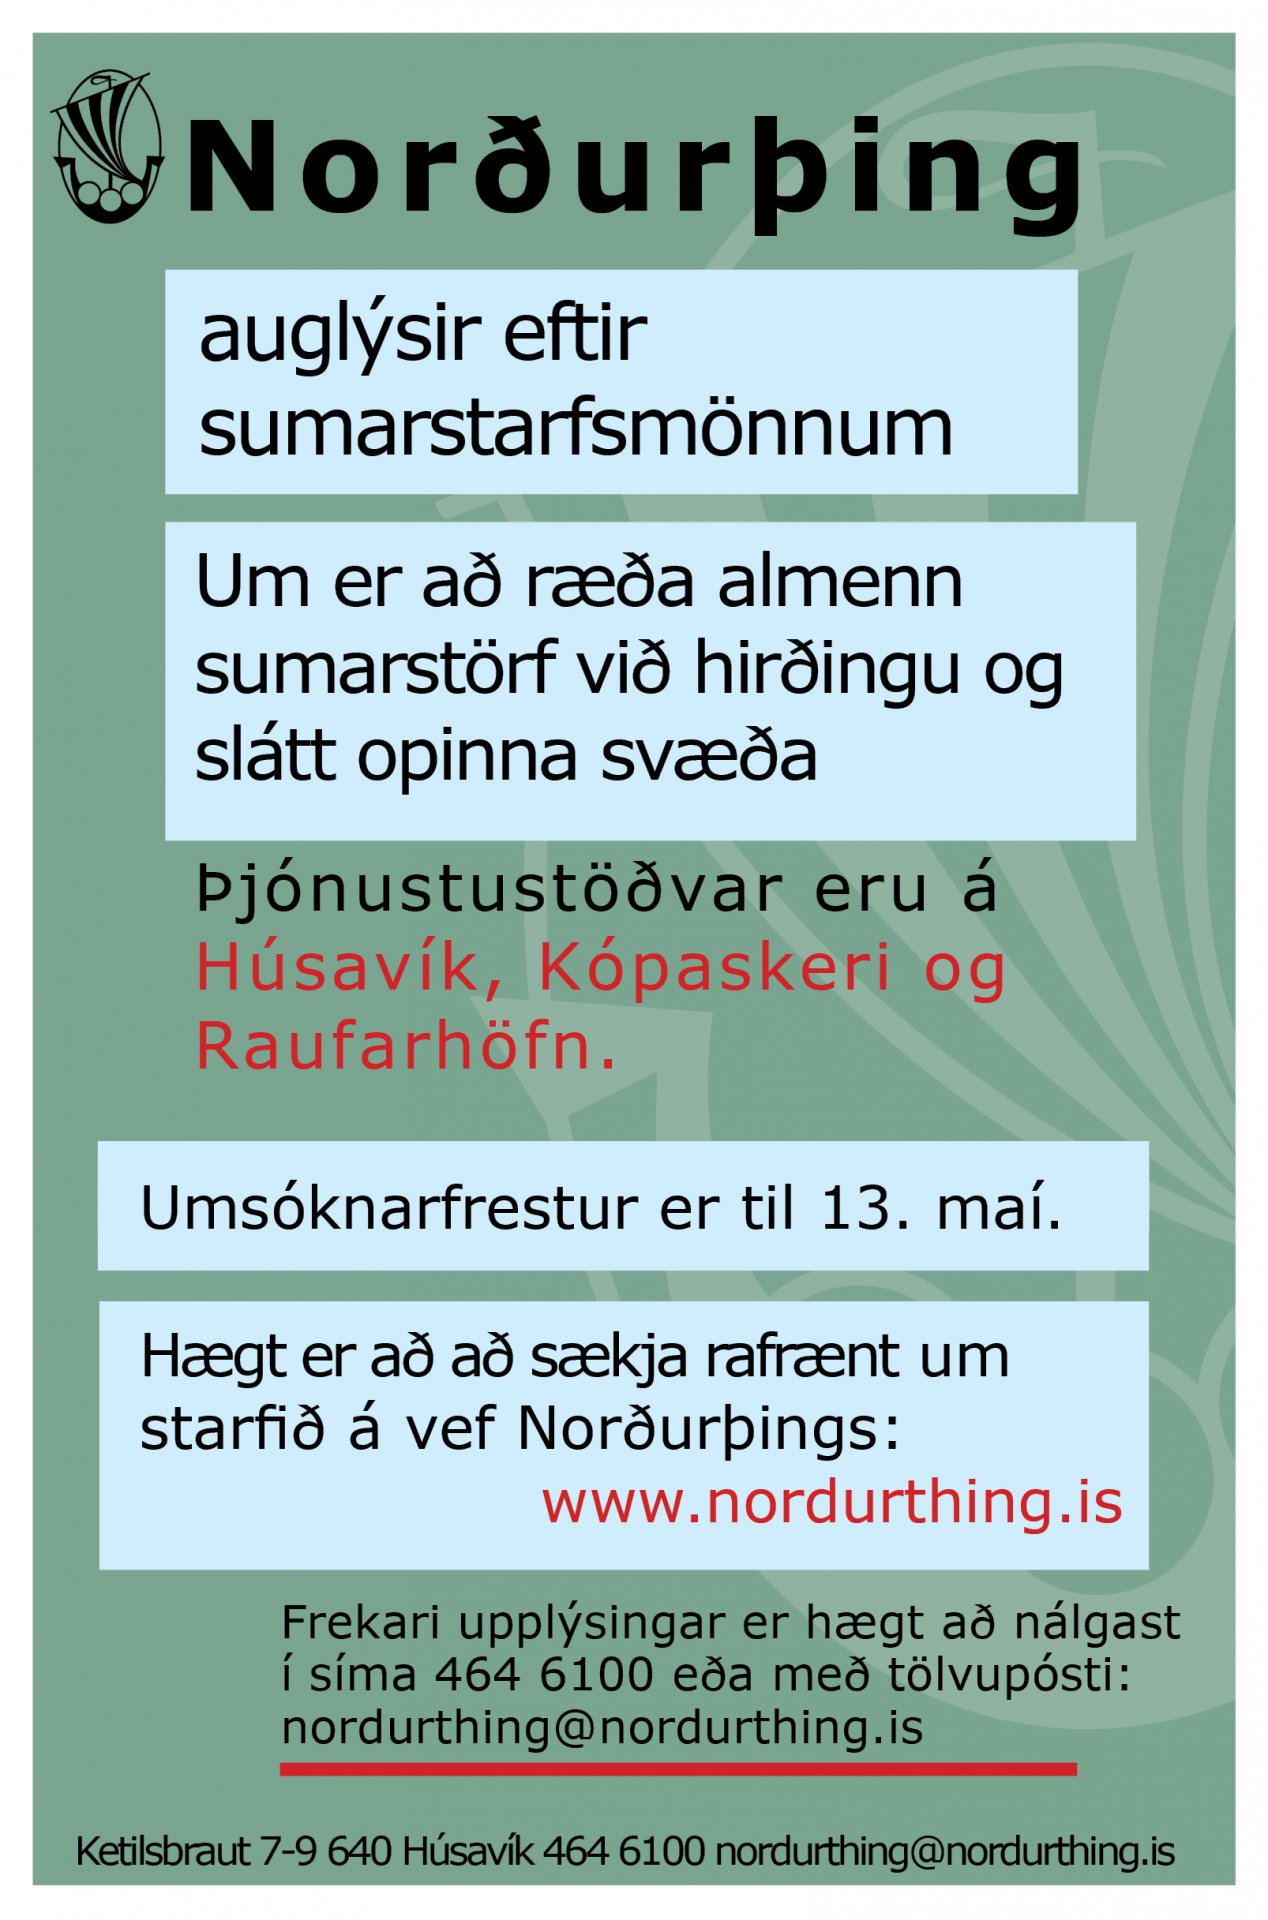 Norðurþing auglýsir eftir sumarstarfsmönnum